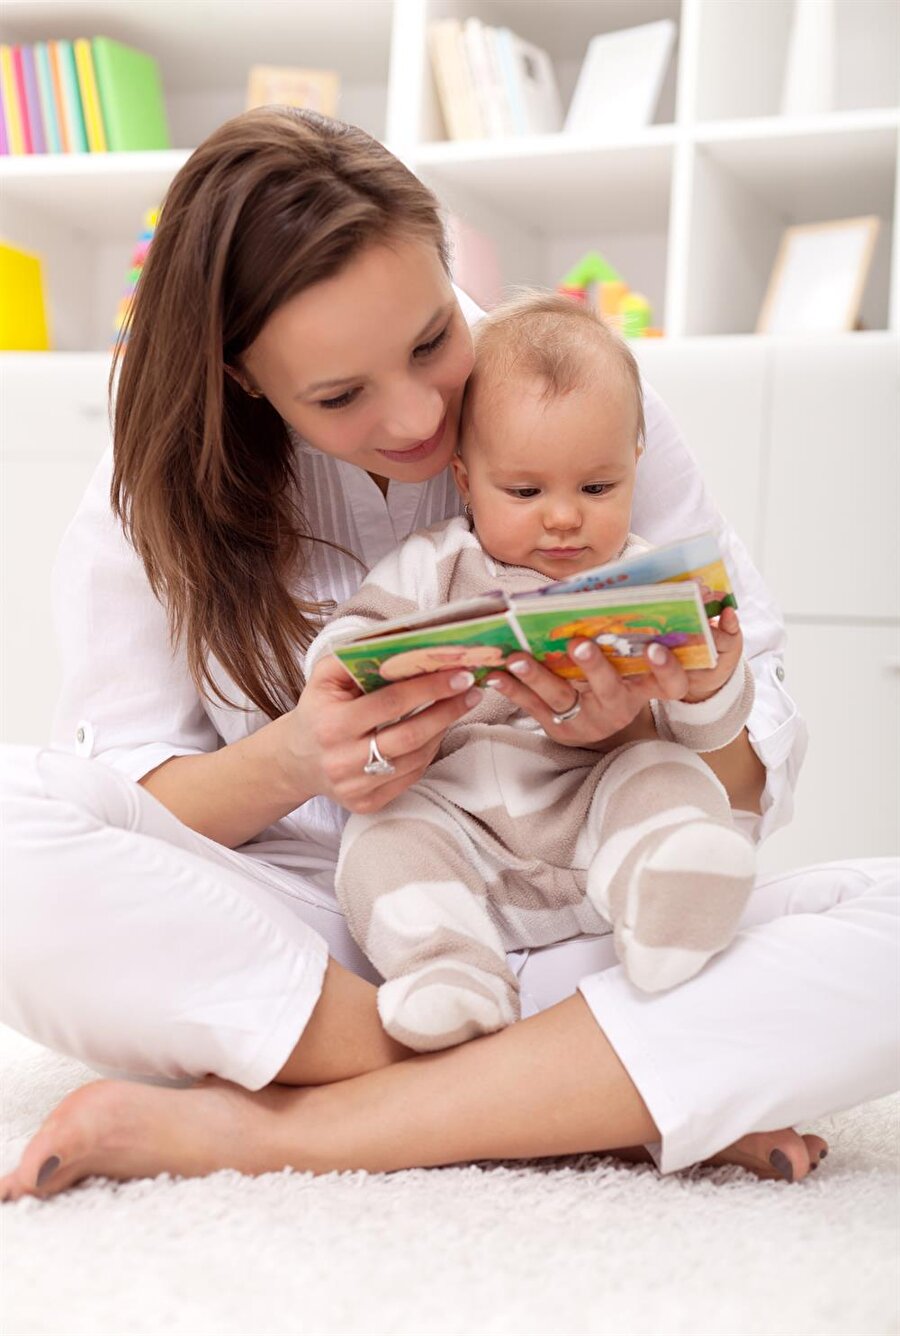 Kitap okuma

                                    Kitap okuma alışkanlığı küçük yaşlarda kazanılır. Bu nedenle henüz 7-8 aylık bebeklerinizi kucağınıza alıp, onlara resimli kitapları okuyabilirsiniz. 
                                